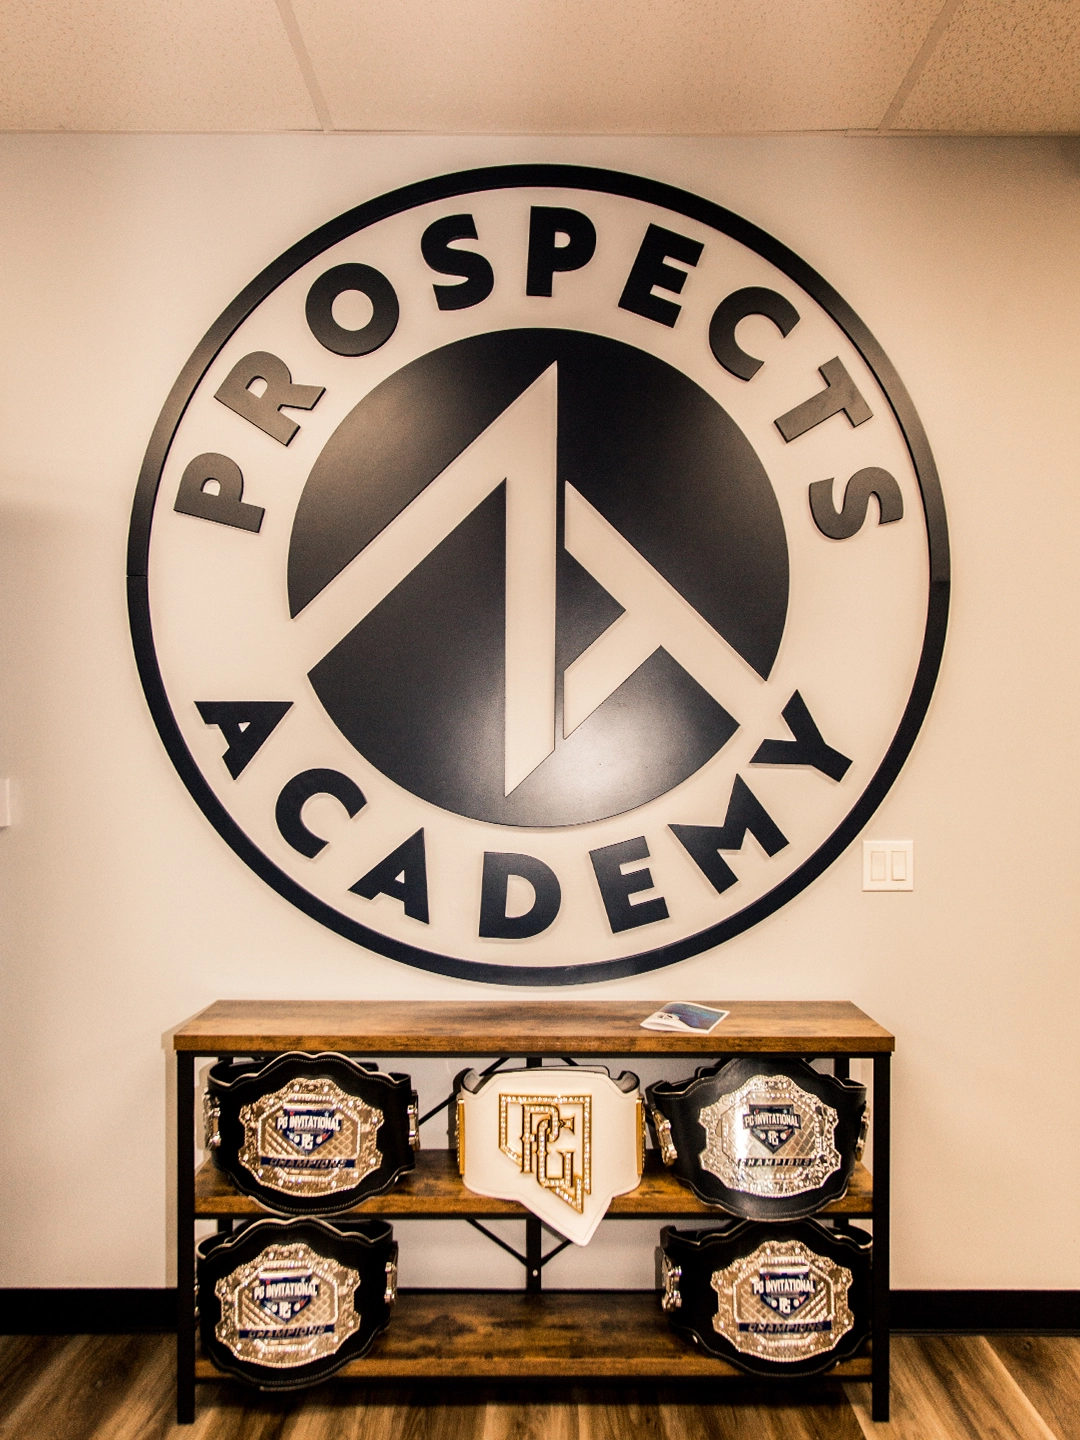 Inside ZT Prospects Academy - Logo backdrop and Belts